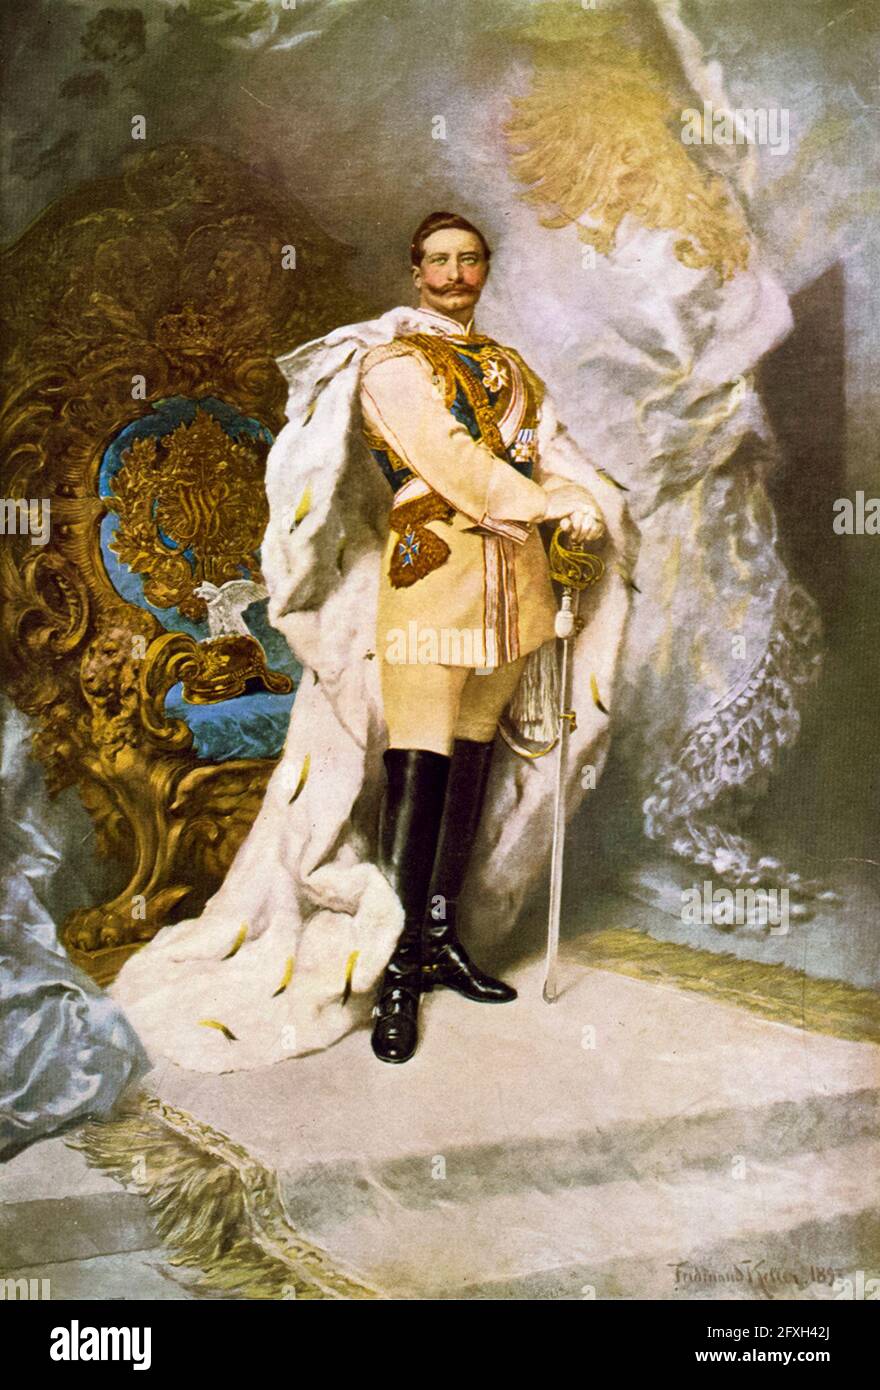 Guglielmo II (1859-1941) (Guglielmo II) in abiti ceremoniali, ultimo imperatore tedesco (Kaiser) e Re di Prussia (1888-1918), stampa ritratto di Ferdinand Keller, 1893 Foto Stock